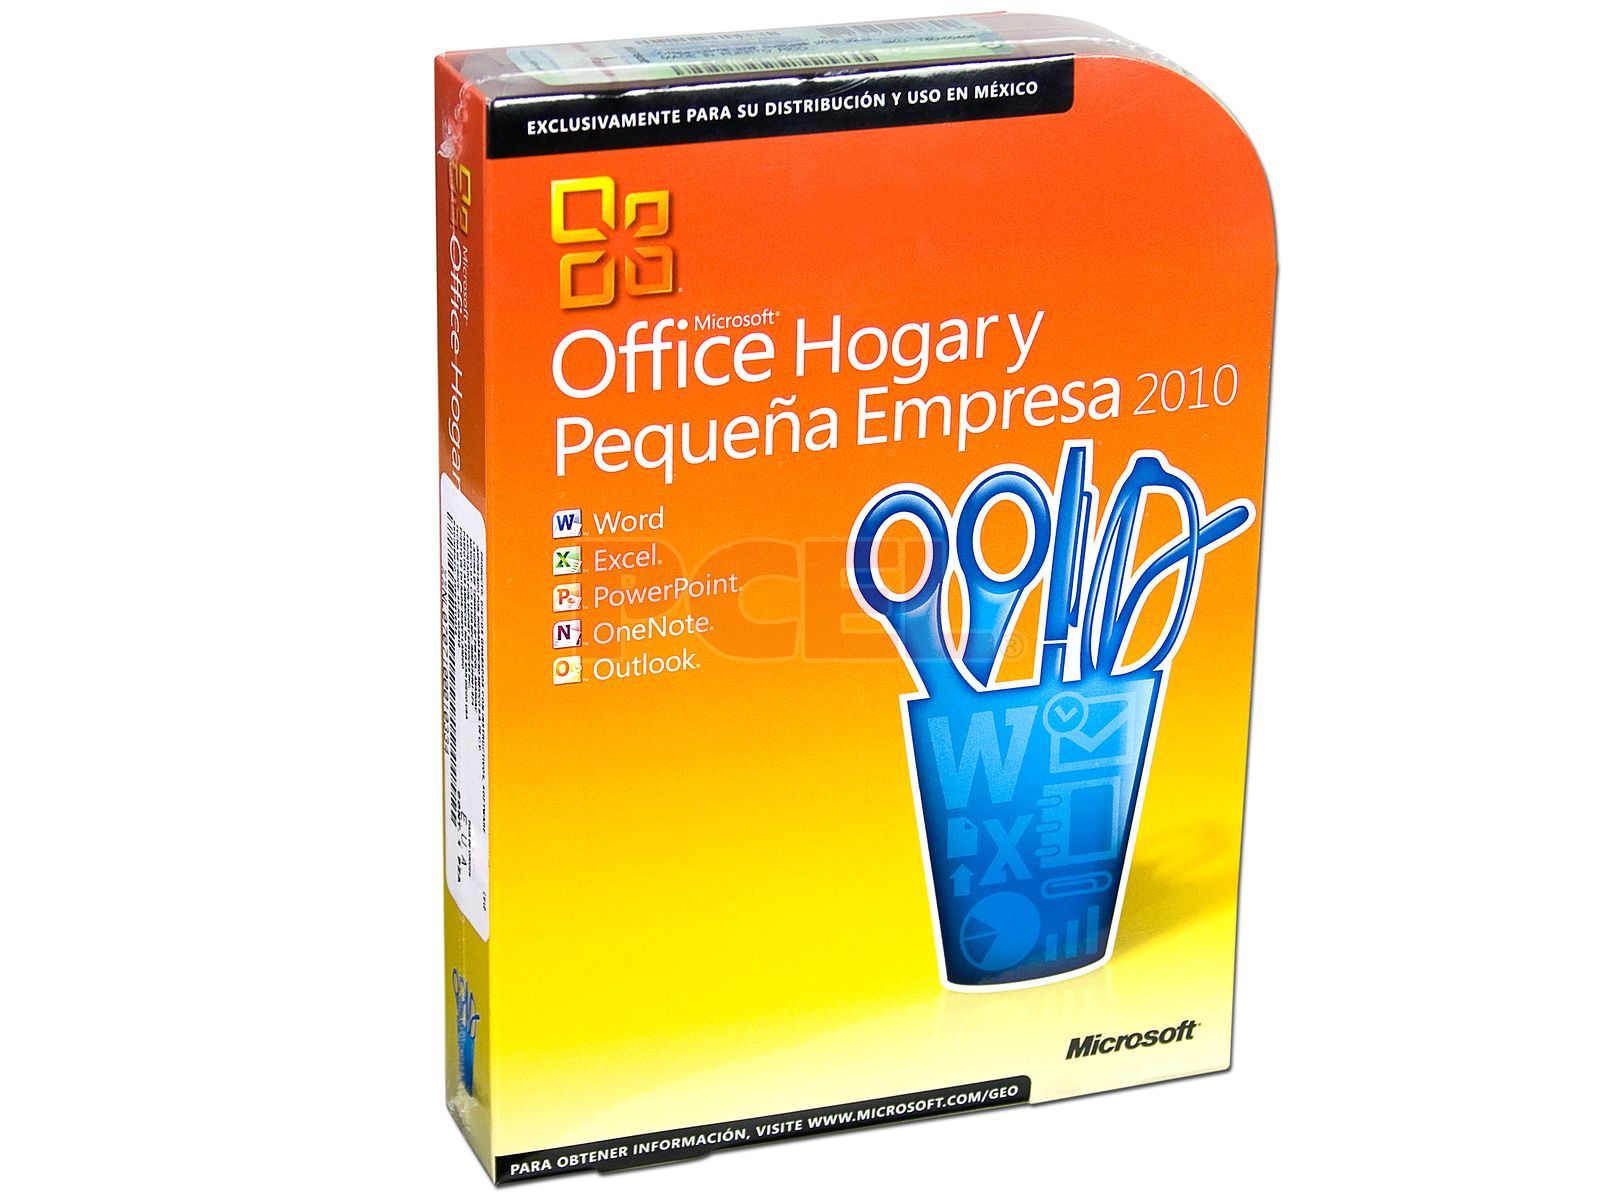 Microsoft Office Hogar y Pequeña Empresa 2010 en Español, DVD